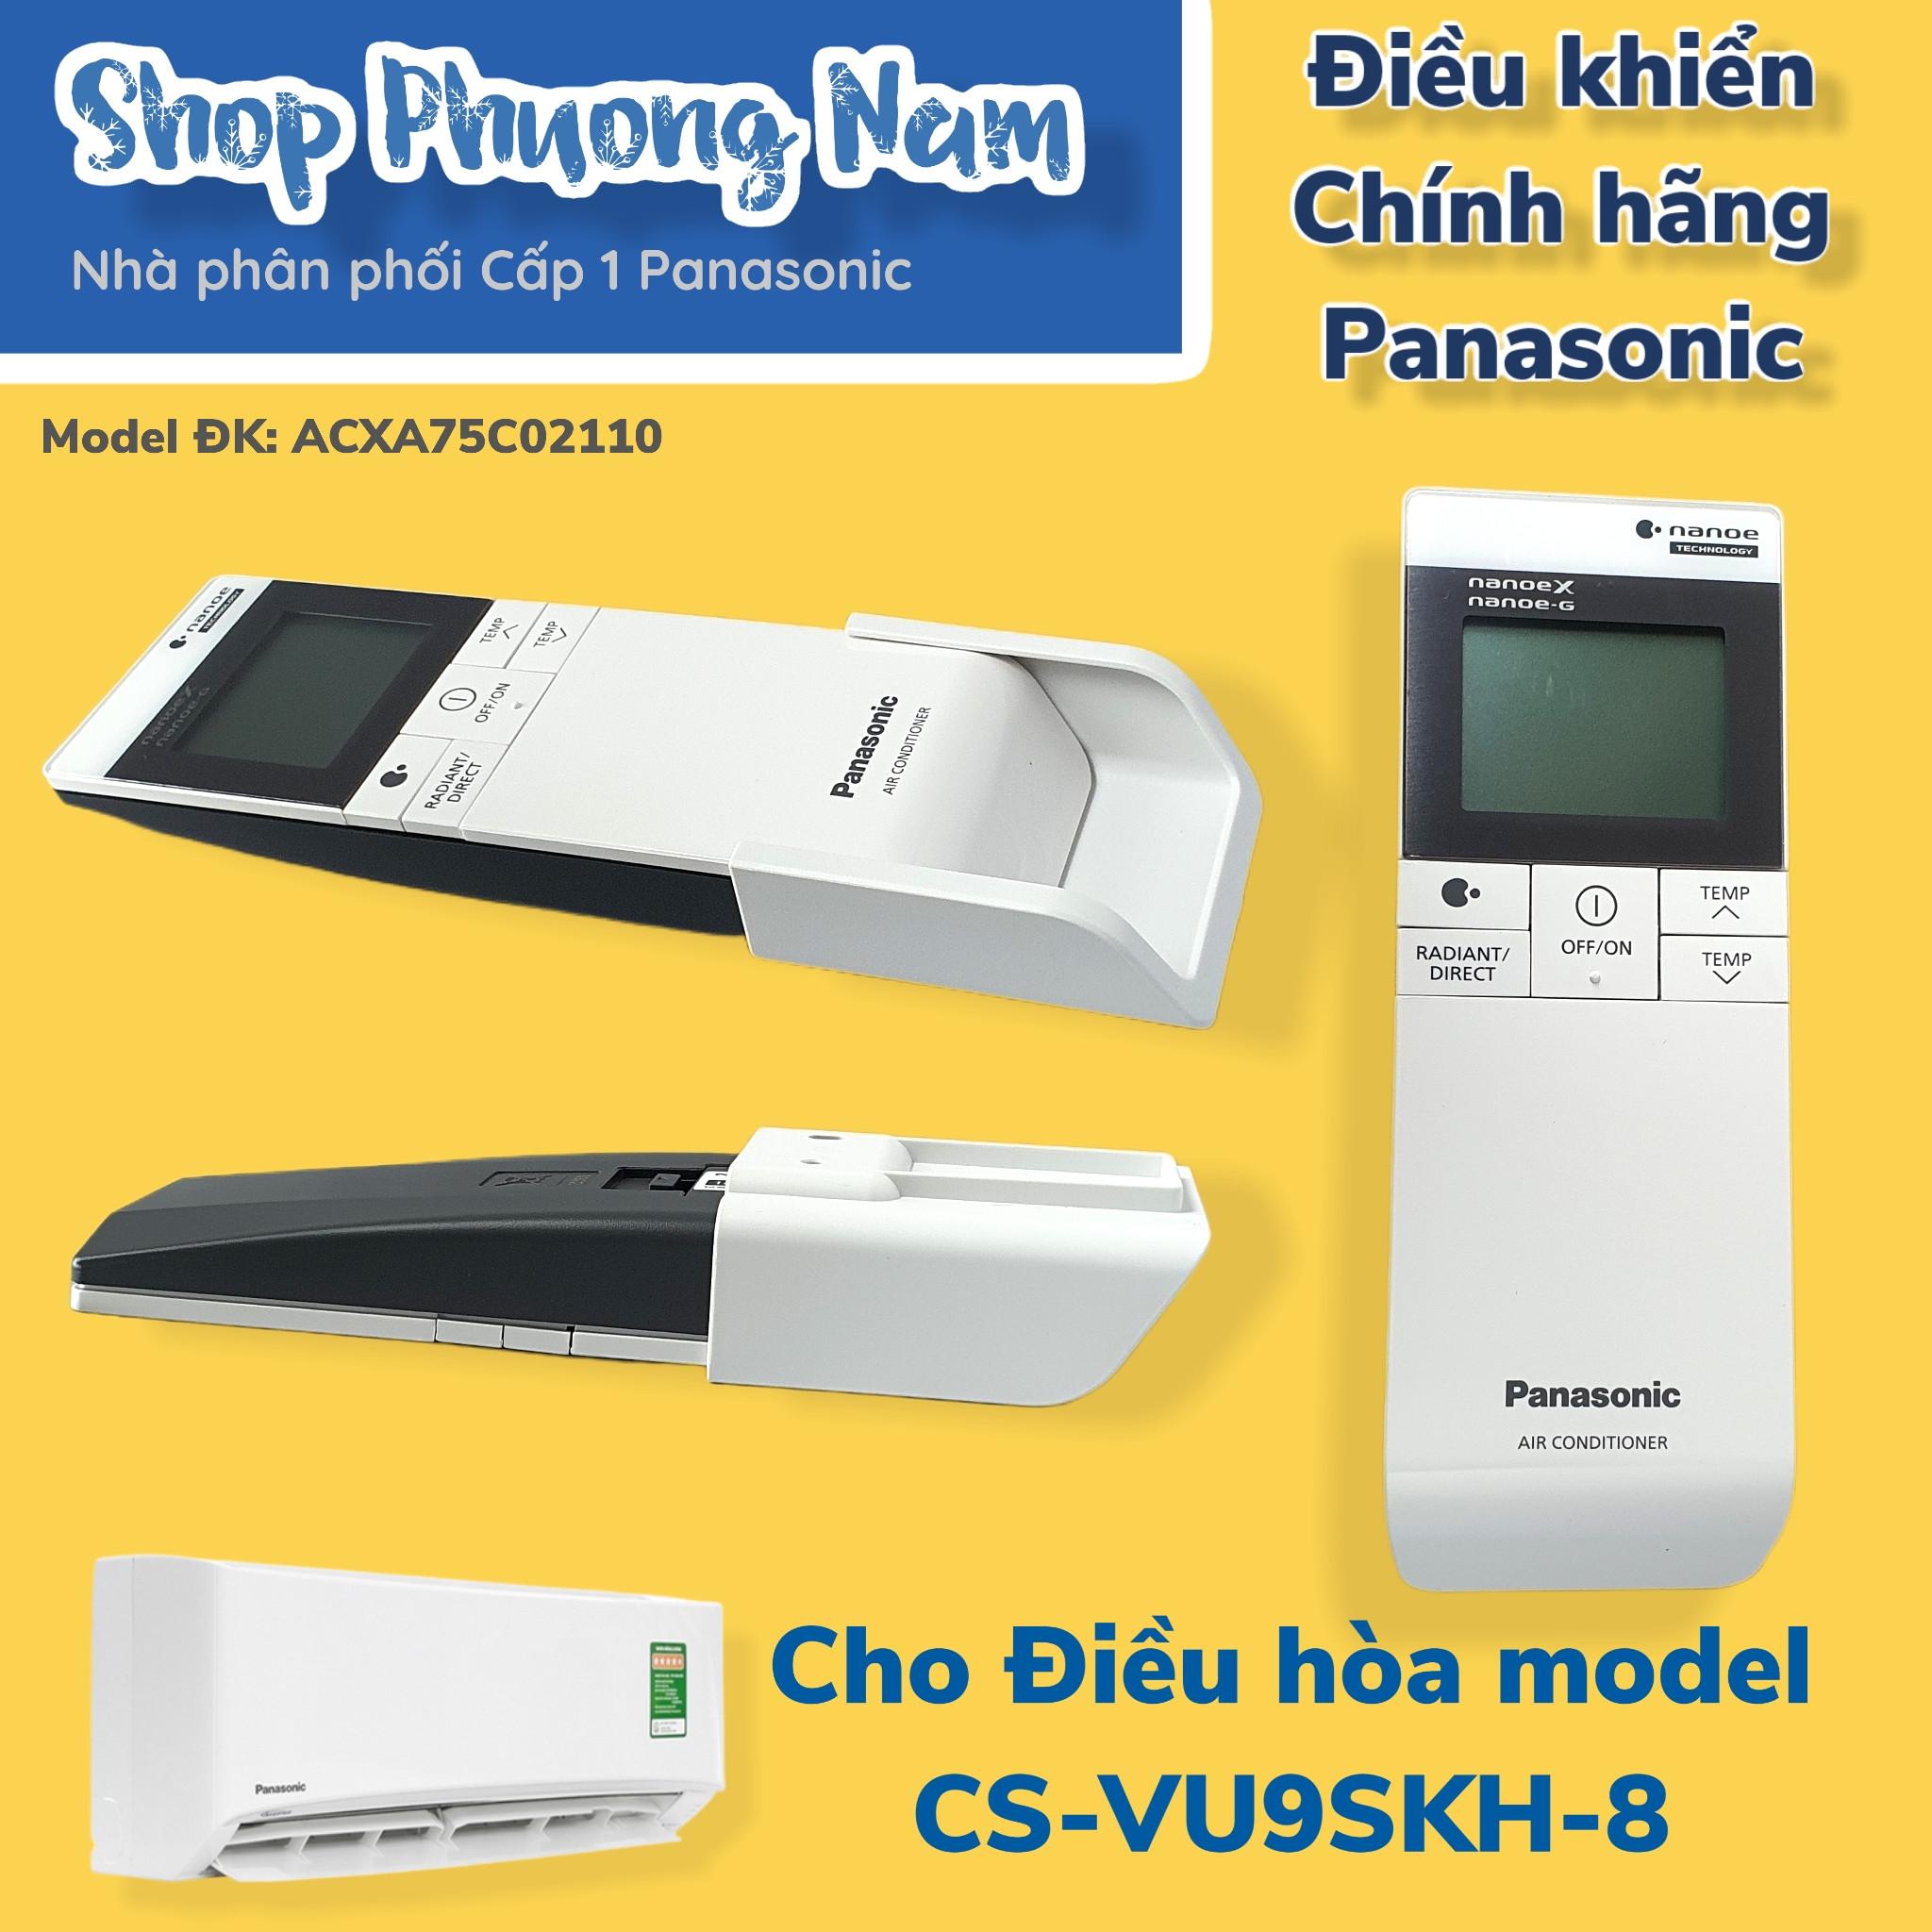 Điều khiển chính hãng cho điều hòa Panasonic model CS-VU9SKH-8